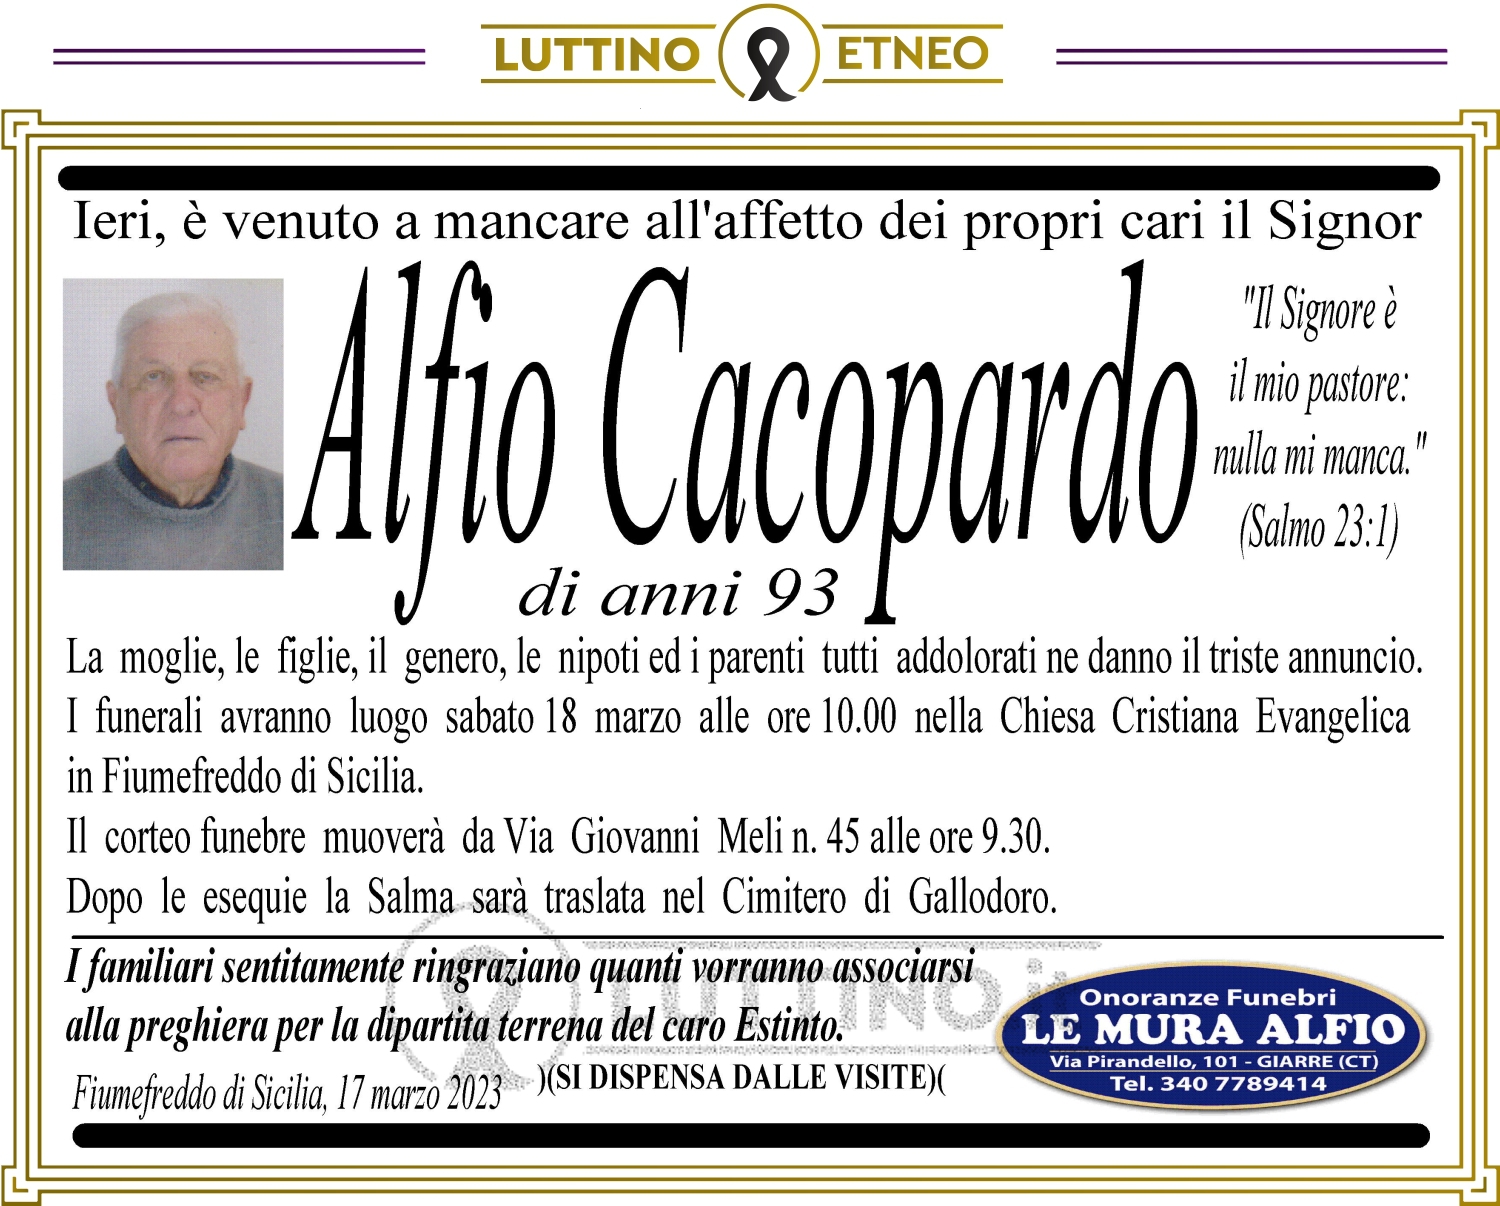 Alfio Cacopardo